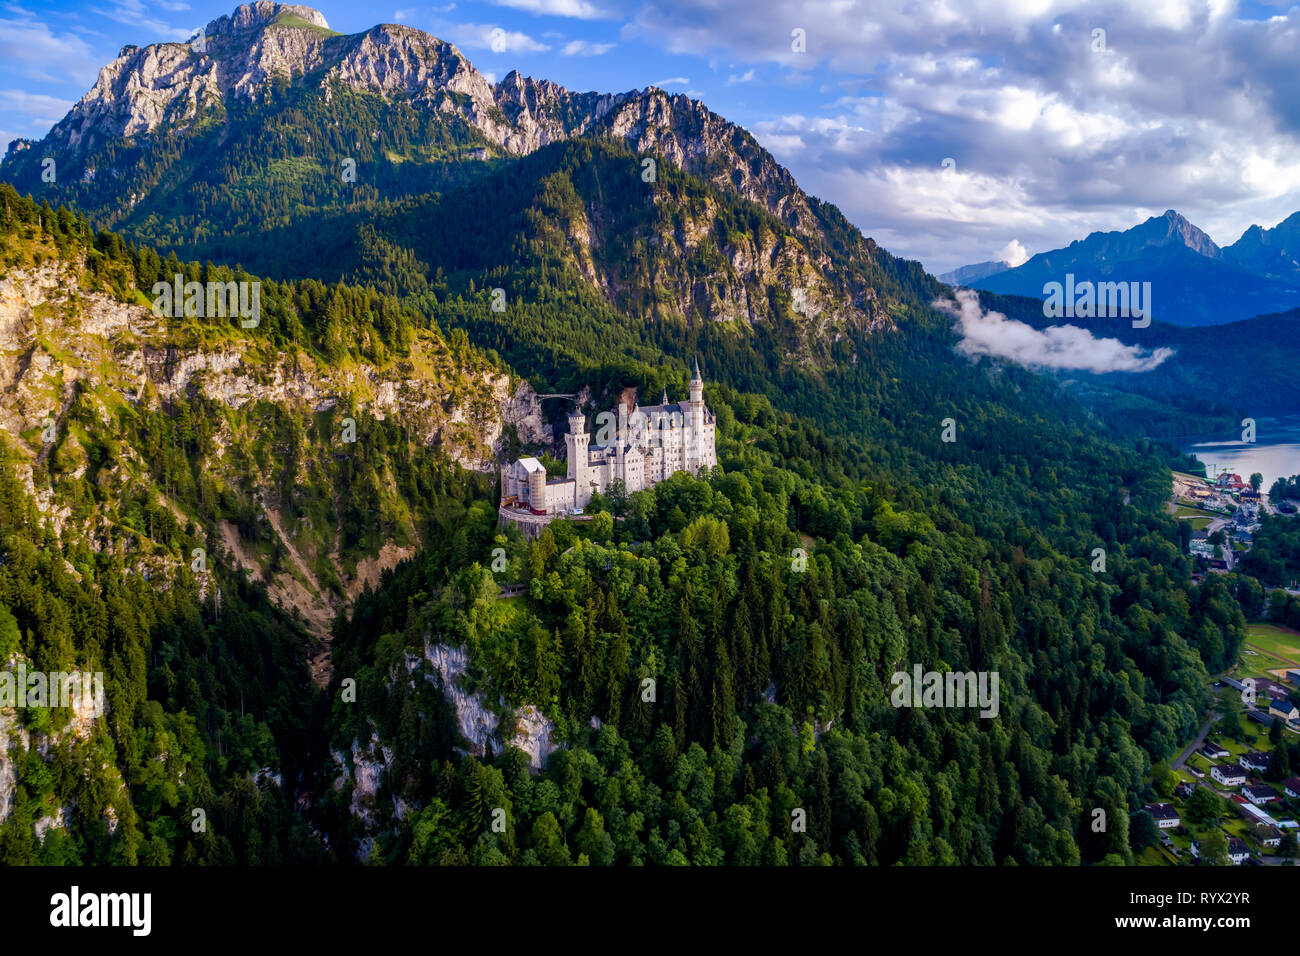 Le château de Neuschwanstein Alpes bavaroises Allemagne Banque D'Images